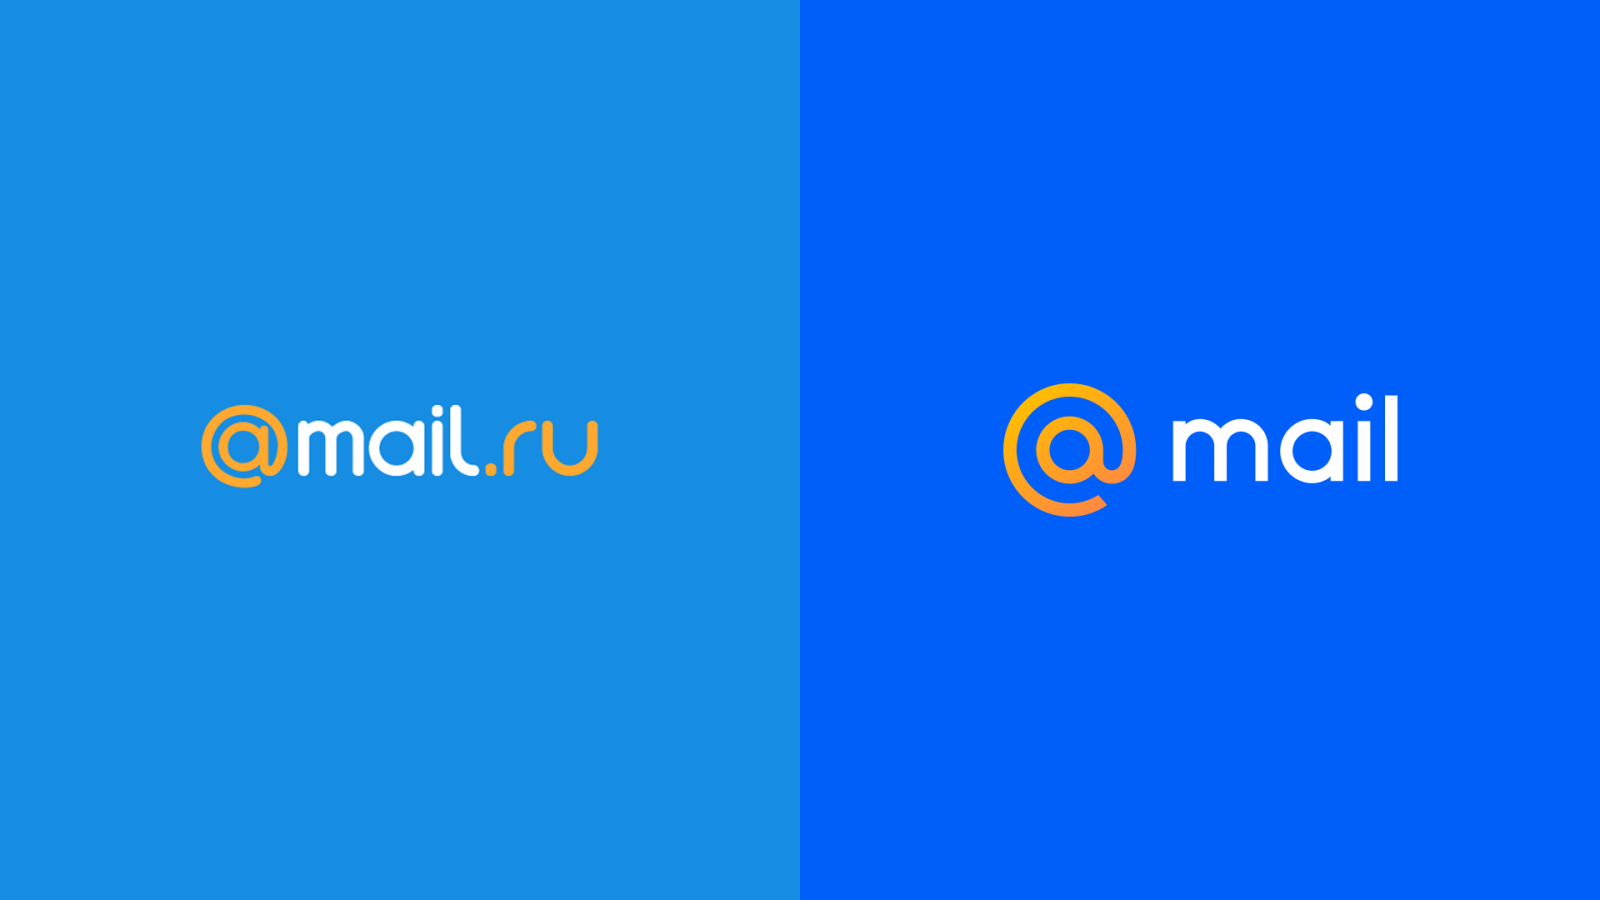 Life mail ru. Mail. Почта майл. Mail.ru лого. Логотип почты мейл.